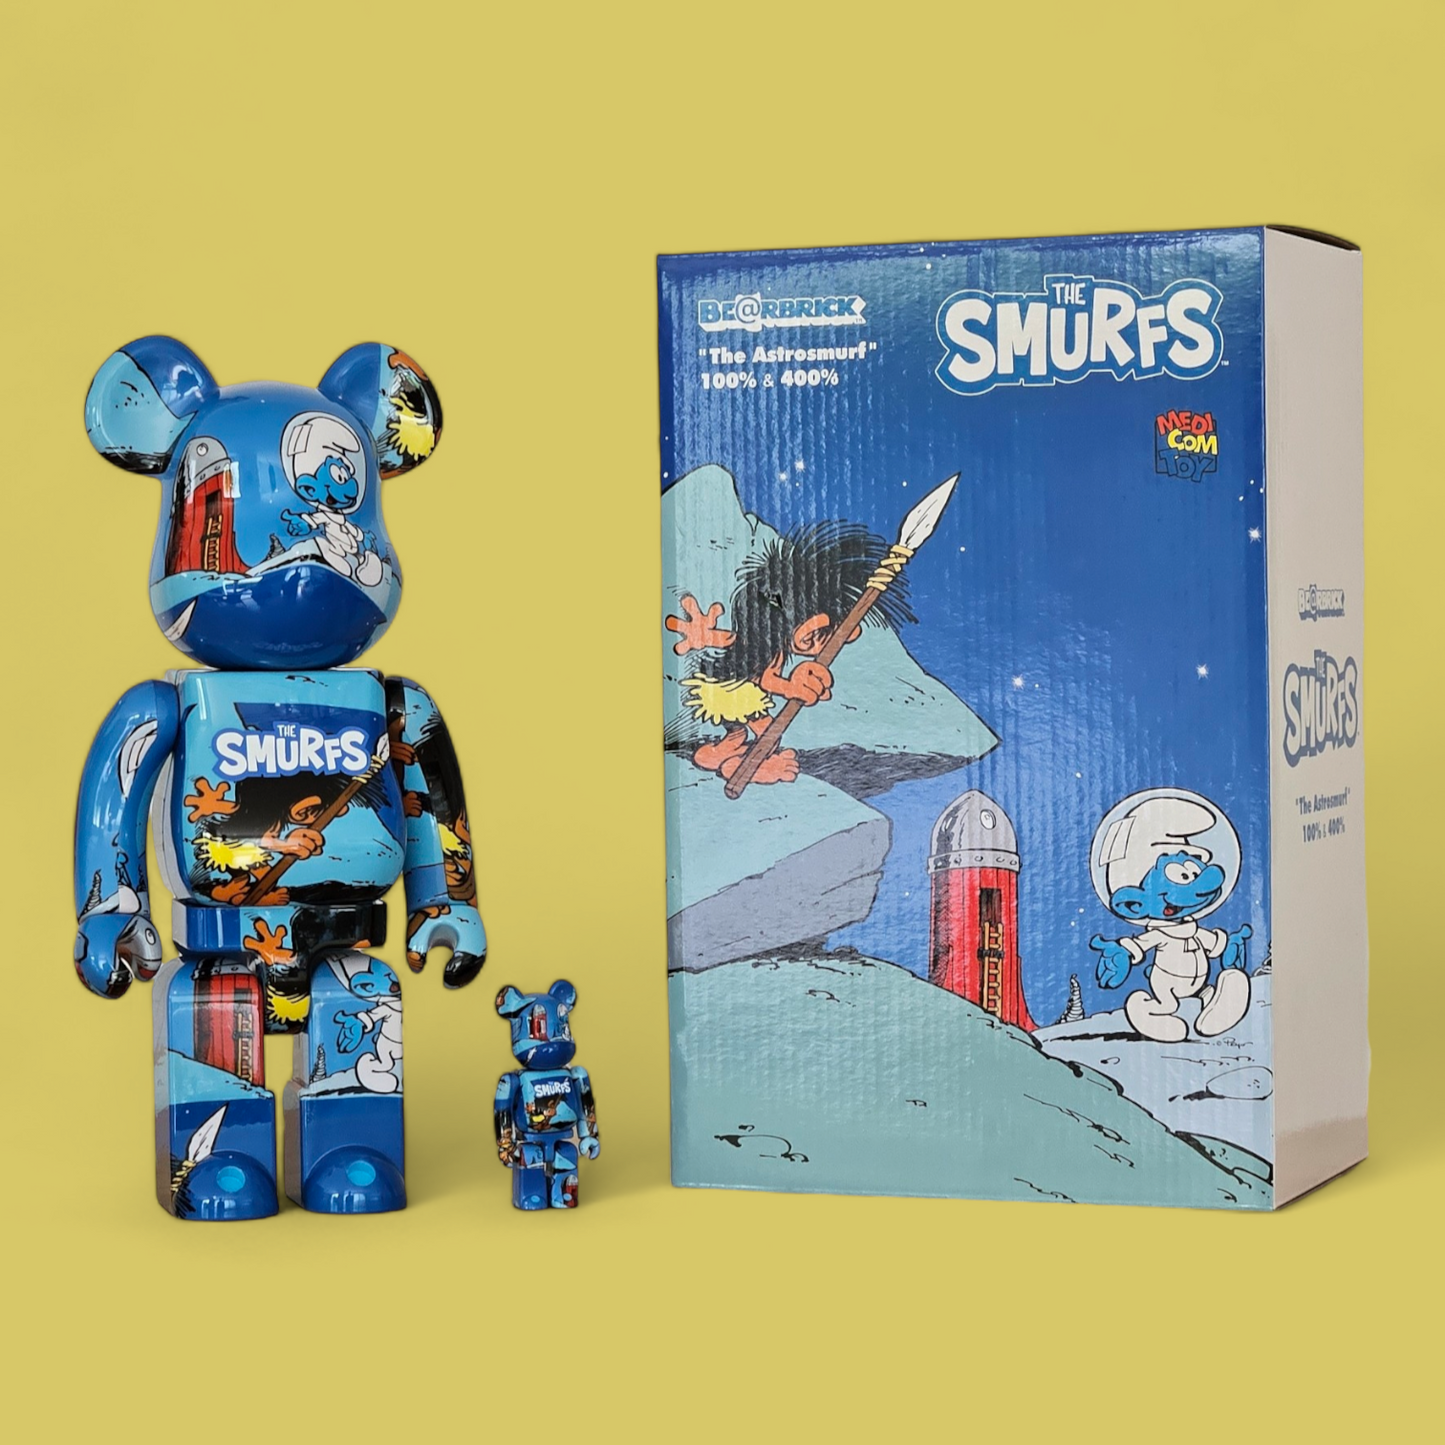 BE@RBRICK The Smurfs "The Astrosmurf" (100%+400%)